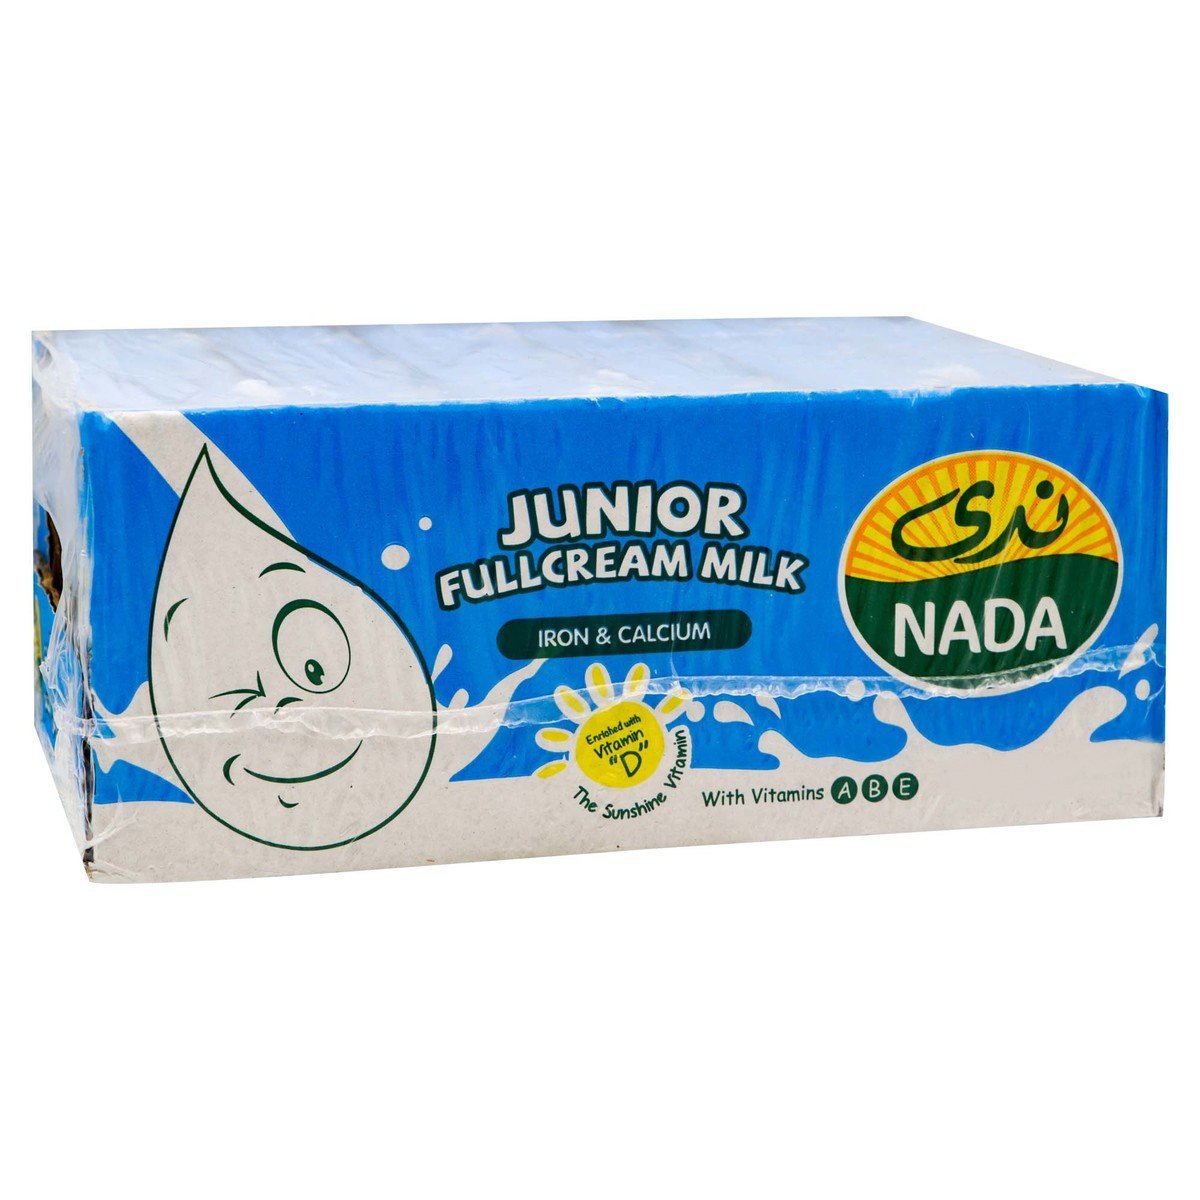 اشتري قم بشراء ندى جونيور حليب كامل الدسم 18 × 115 مل Online at Best Price من الموقع - من لولو هايبر ماركت UHT Milk في السعودية